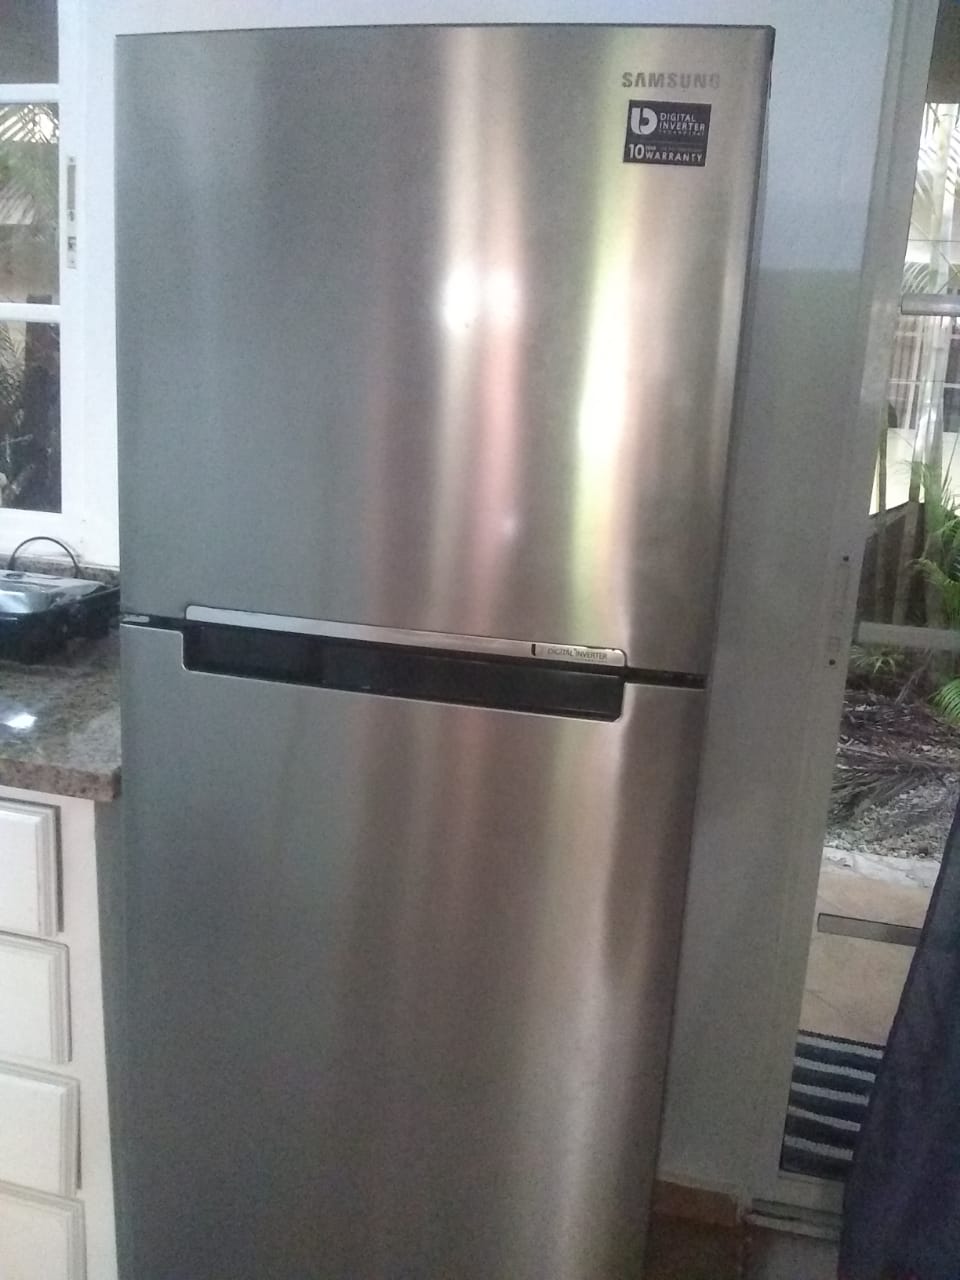 cocina - refrigerador nevera Samsung 18 cu. ft.